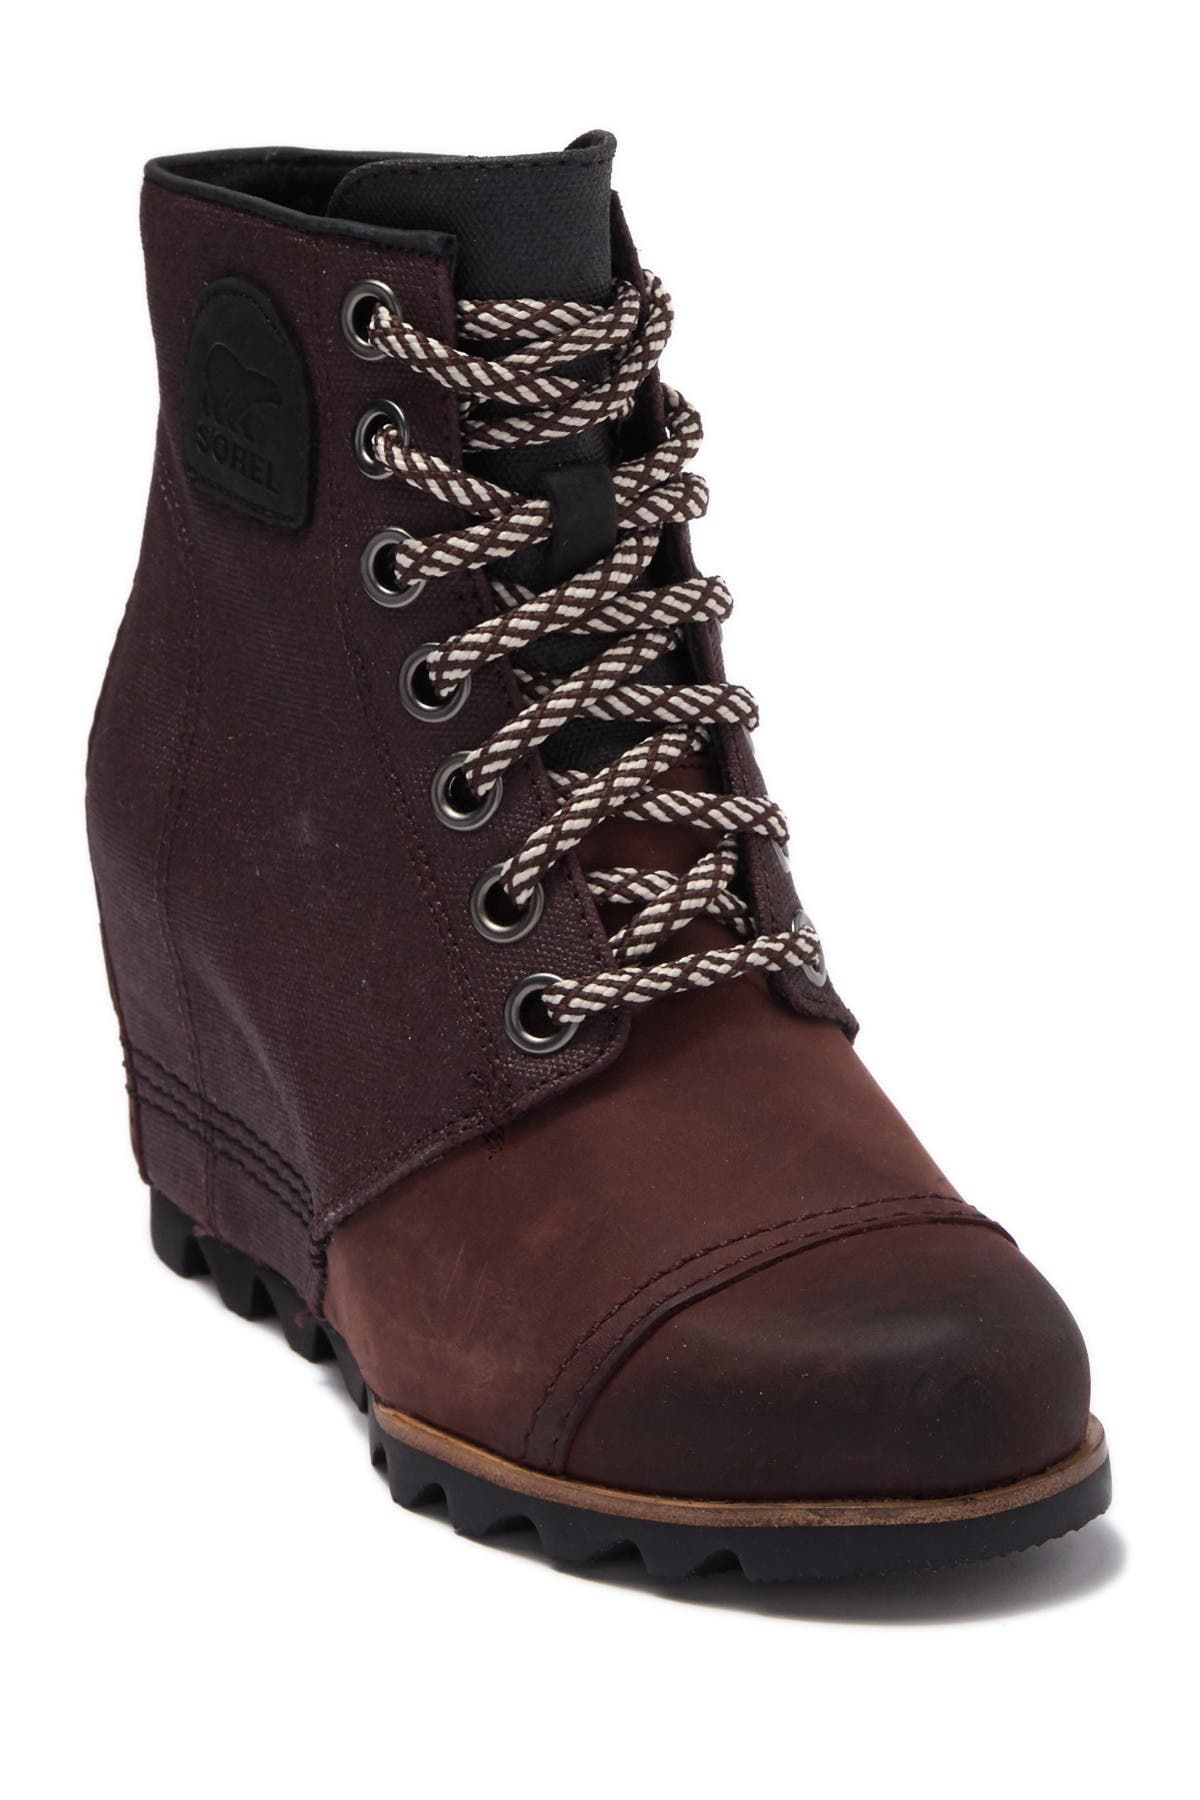 women's sorel pdx wedge boots